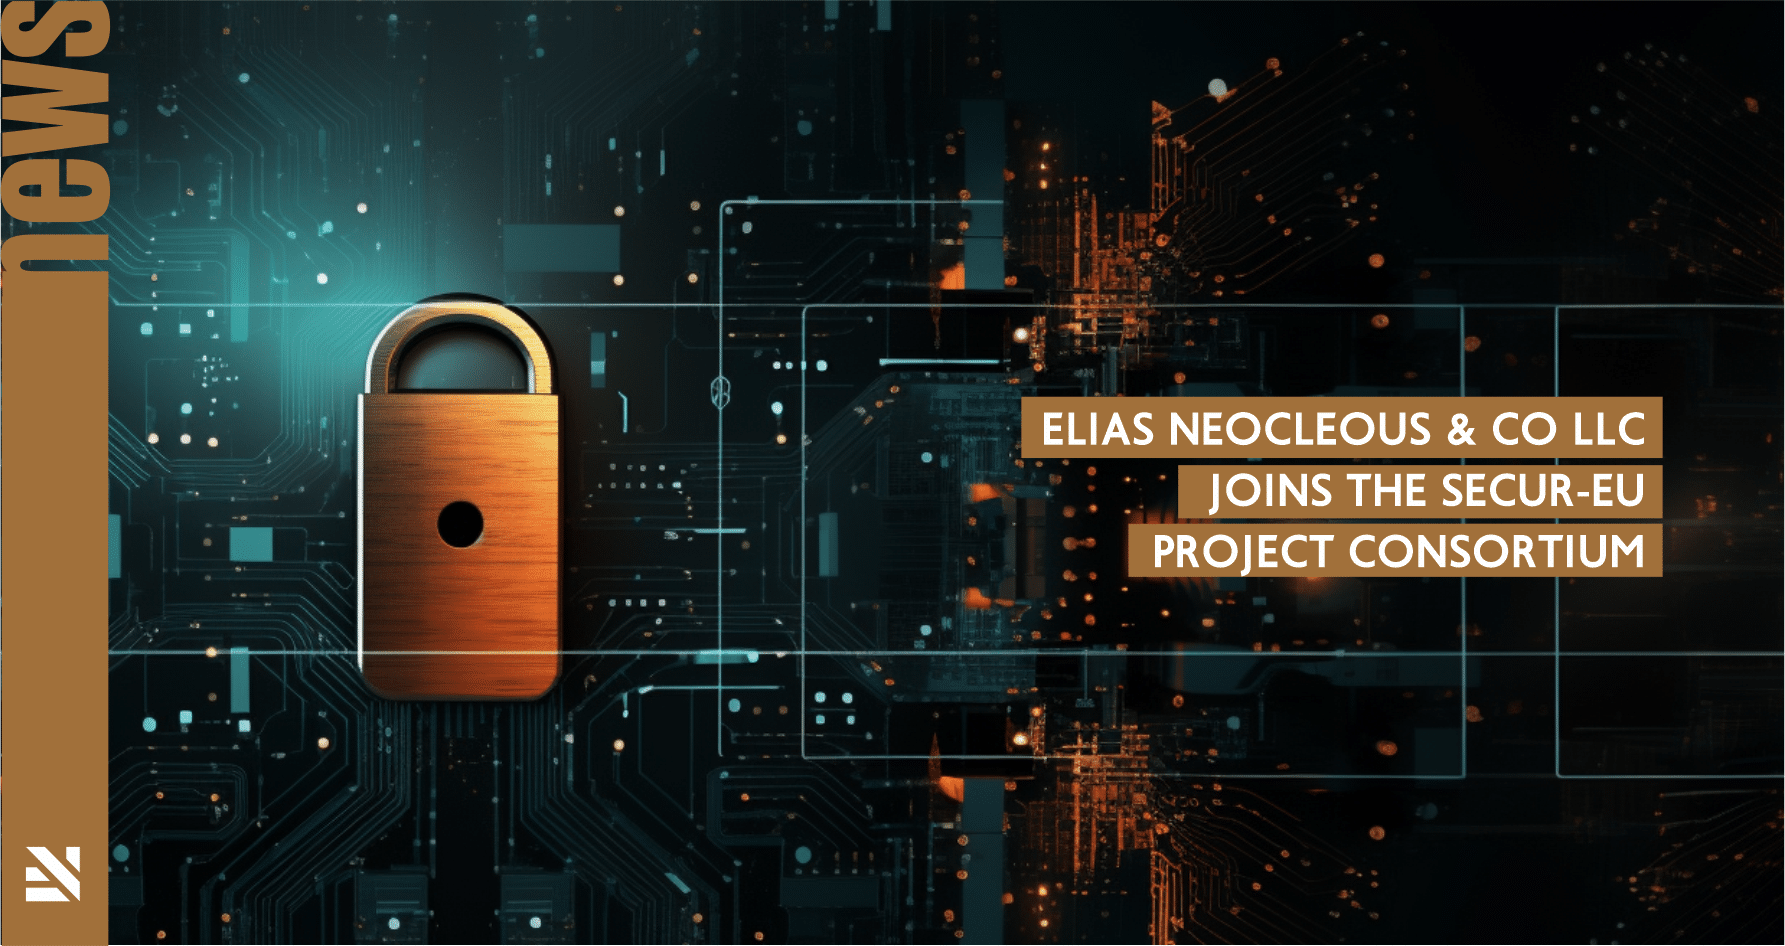 Elias Neocleous & Co LLC joins the SECUR-EU Project Consortium